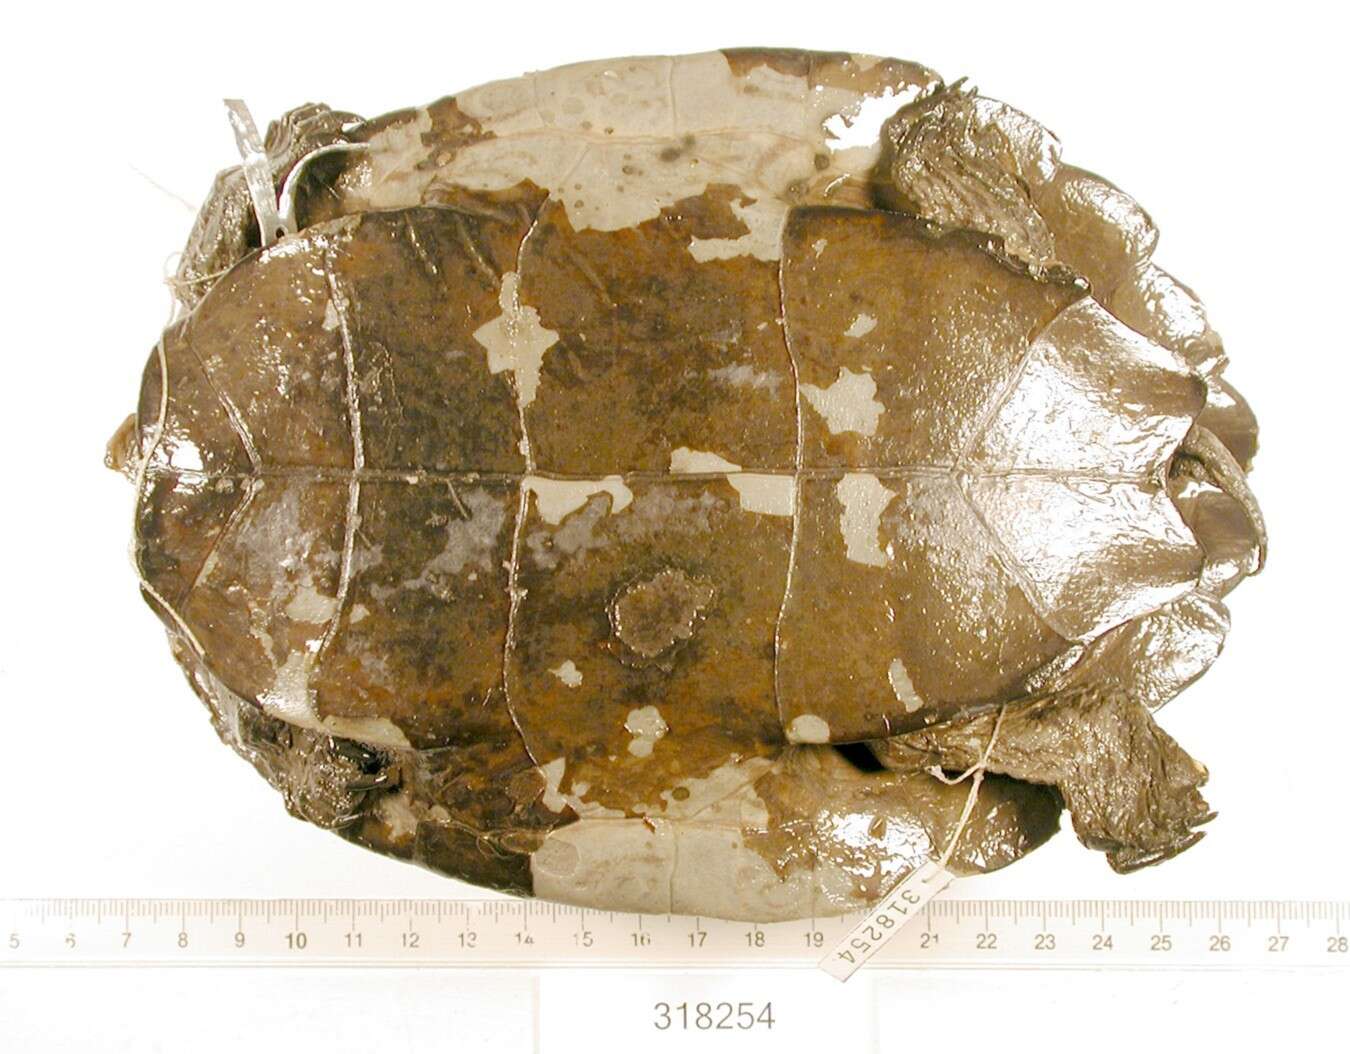 Image of Alabama Map Turtle